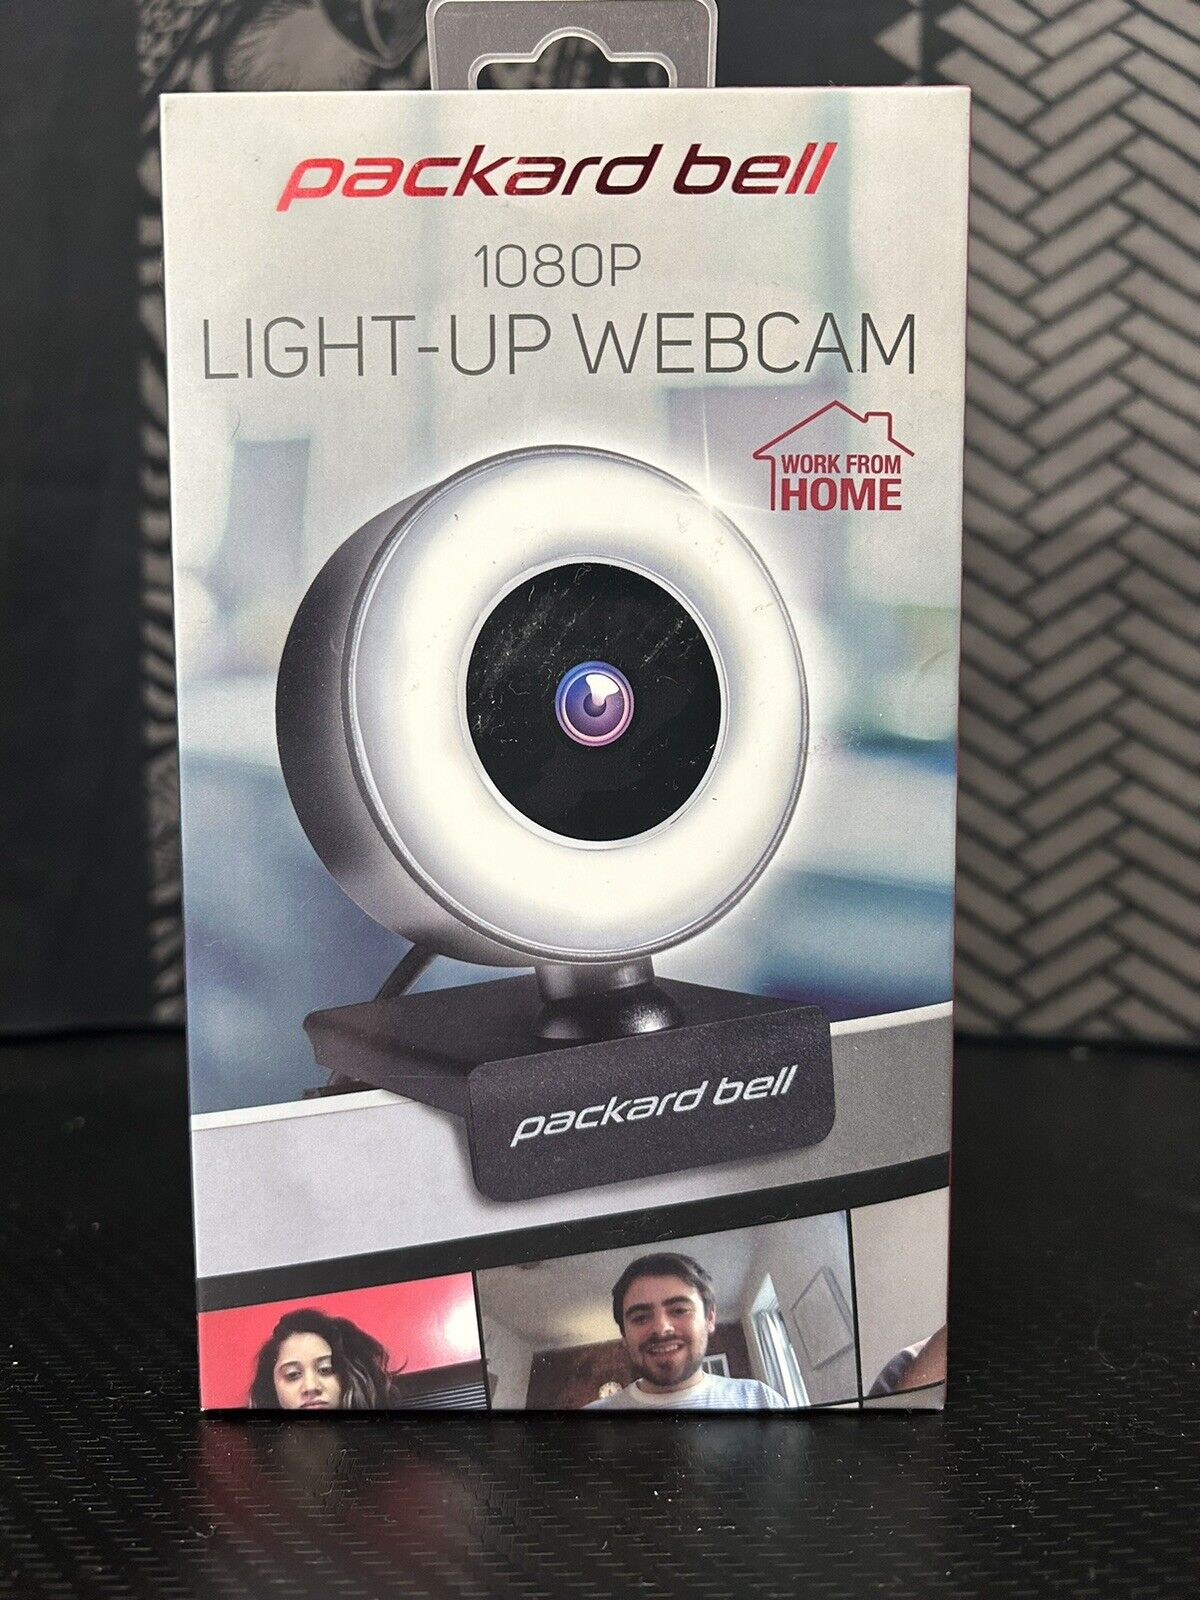 Packard Bell 1080P Light-UP WebCam